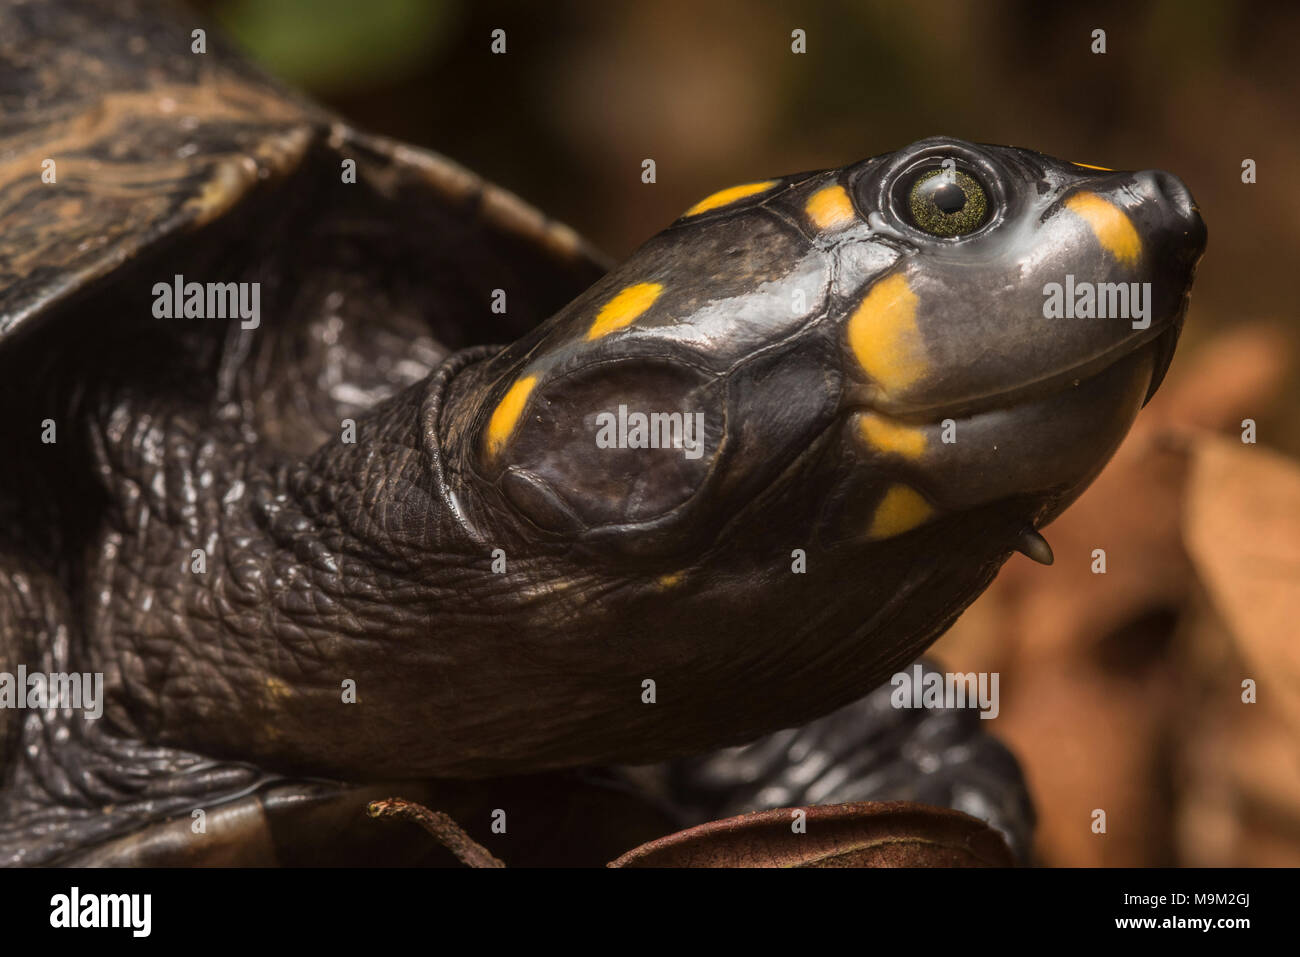 Un primo piano di una tartaruga a collo di sideneck con testa gialla (Podocnemis unifilis), una specie minacciata di tartaruga d'acqua dolce del Sud America. Foto Stock